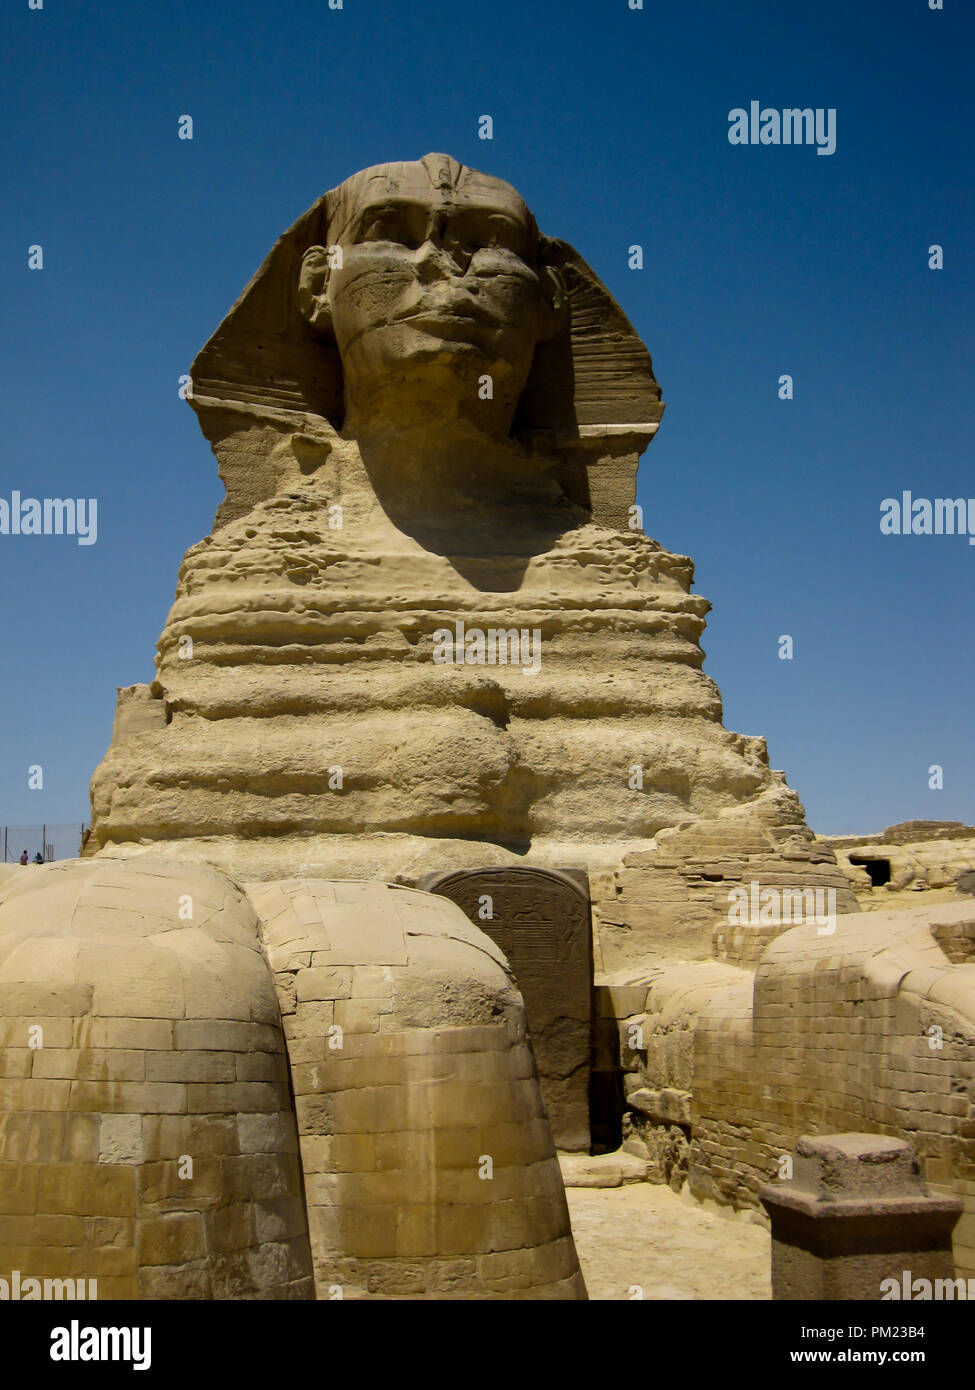 Close up viste la Grande Sfinge di Giza in Egitto in una limitata area di accesso. Questo è un importante destinazione turistica e importante sito archeologico. Foto Stock